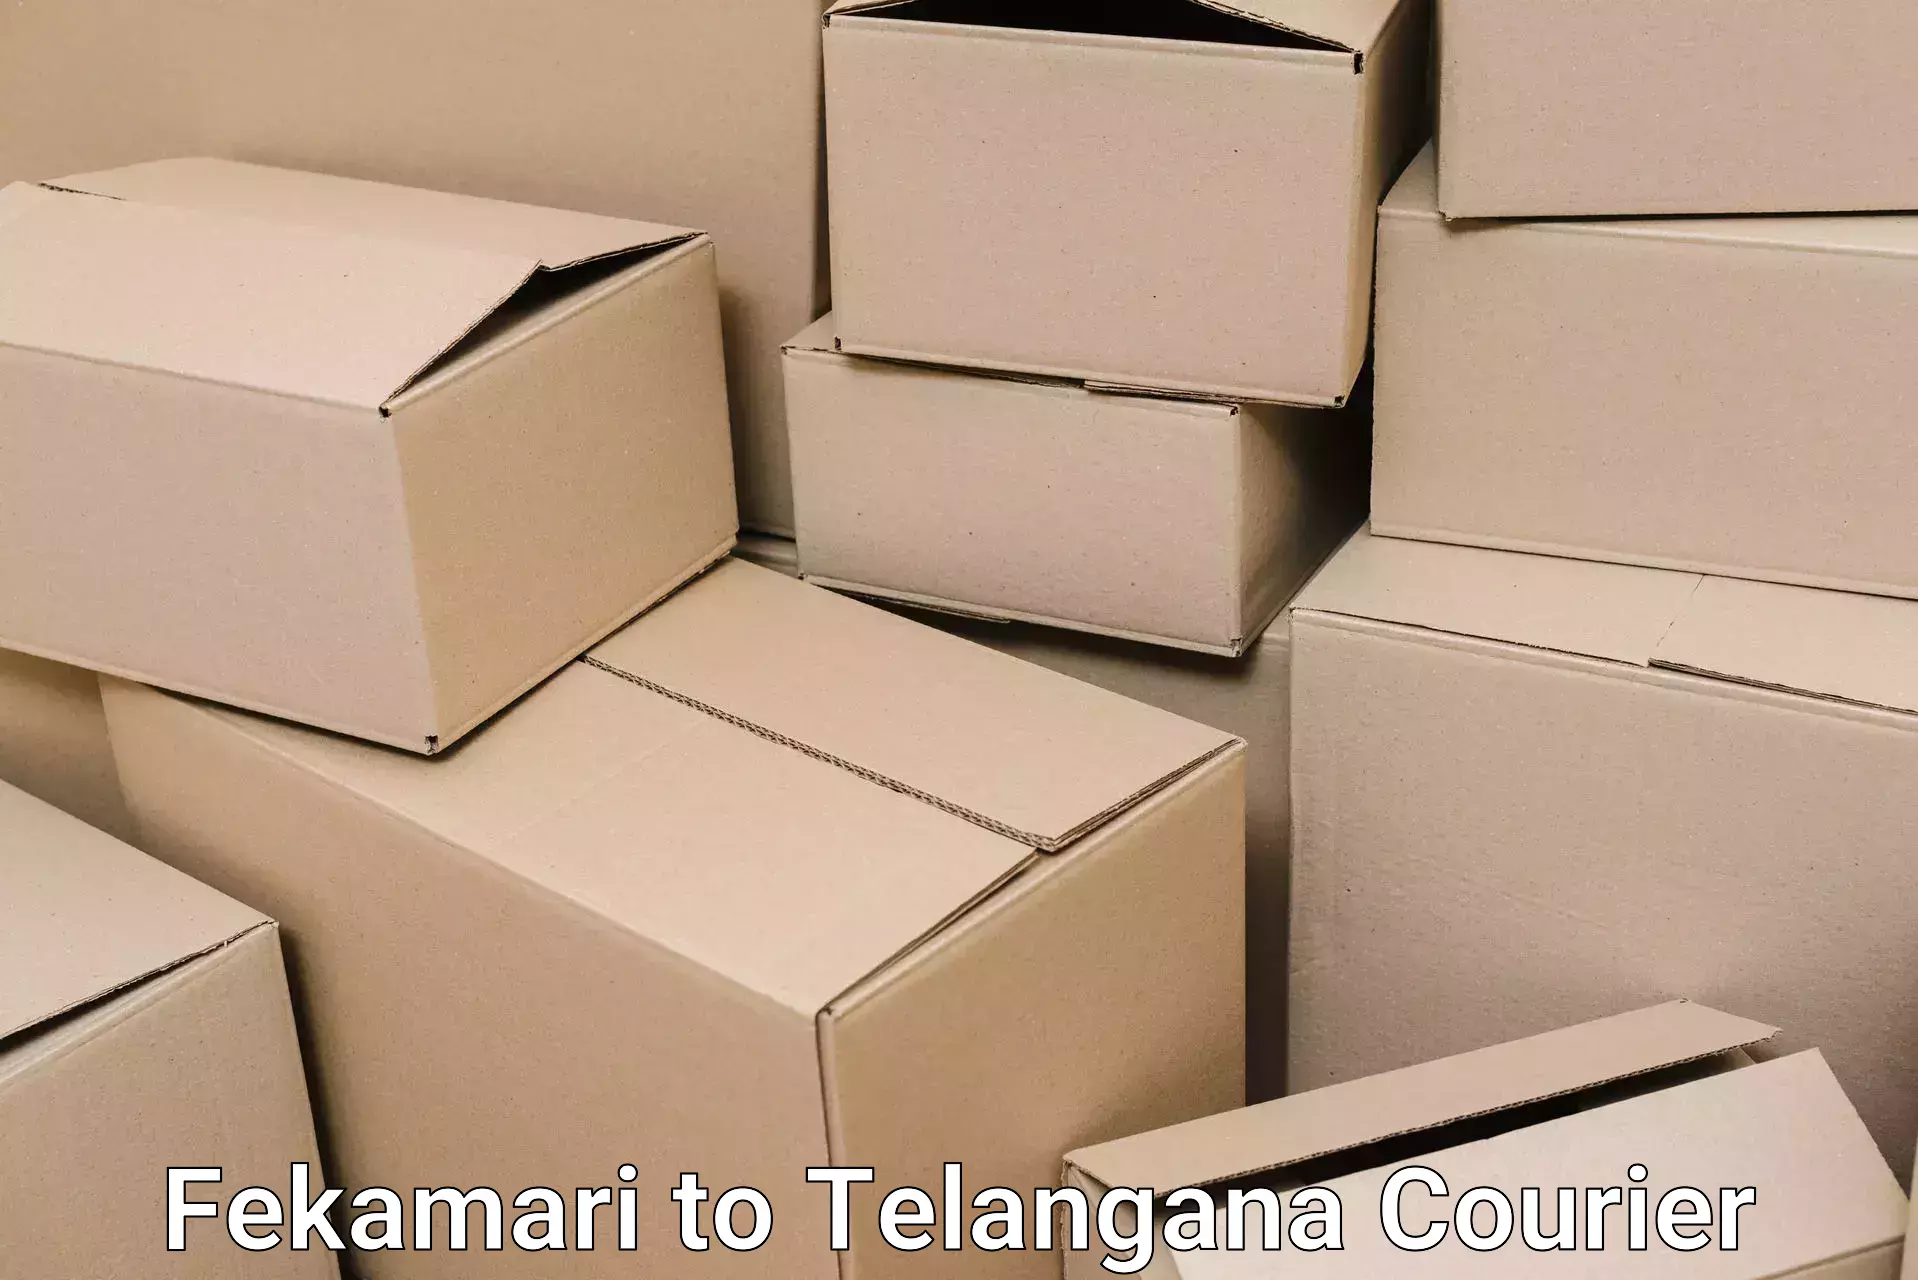 Residential moving experts Fekamari to Warangal